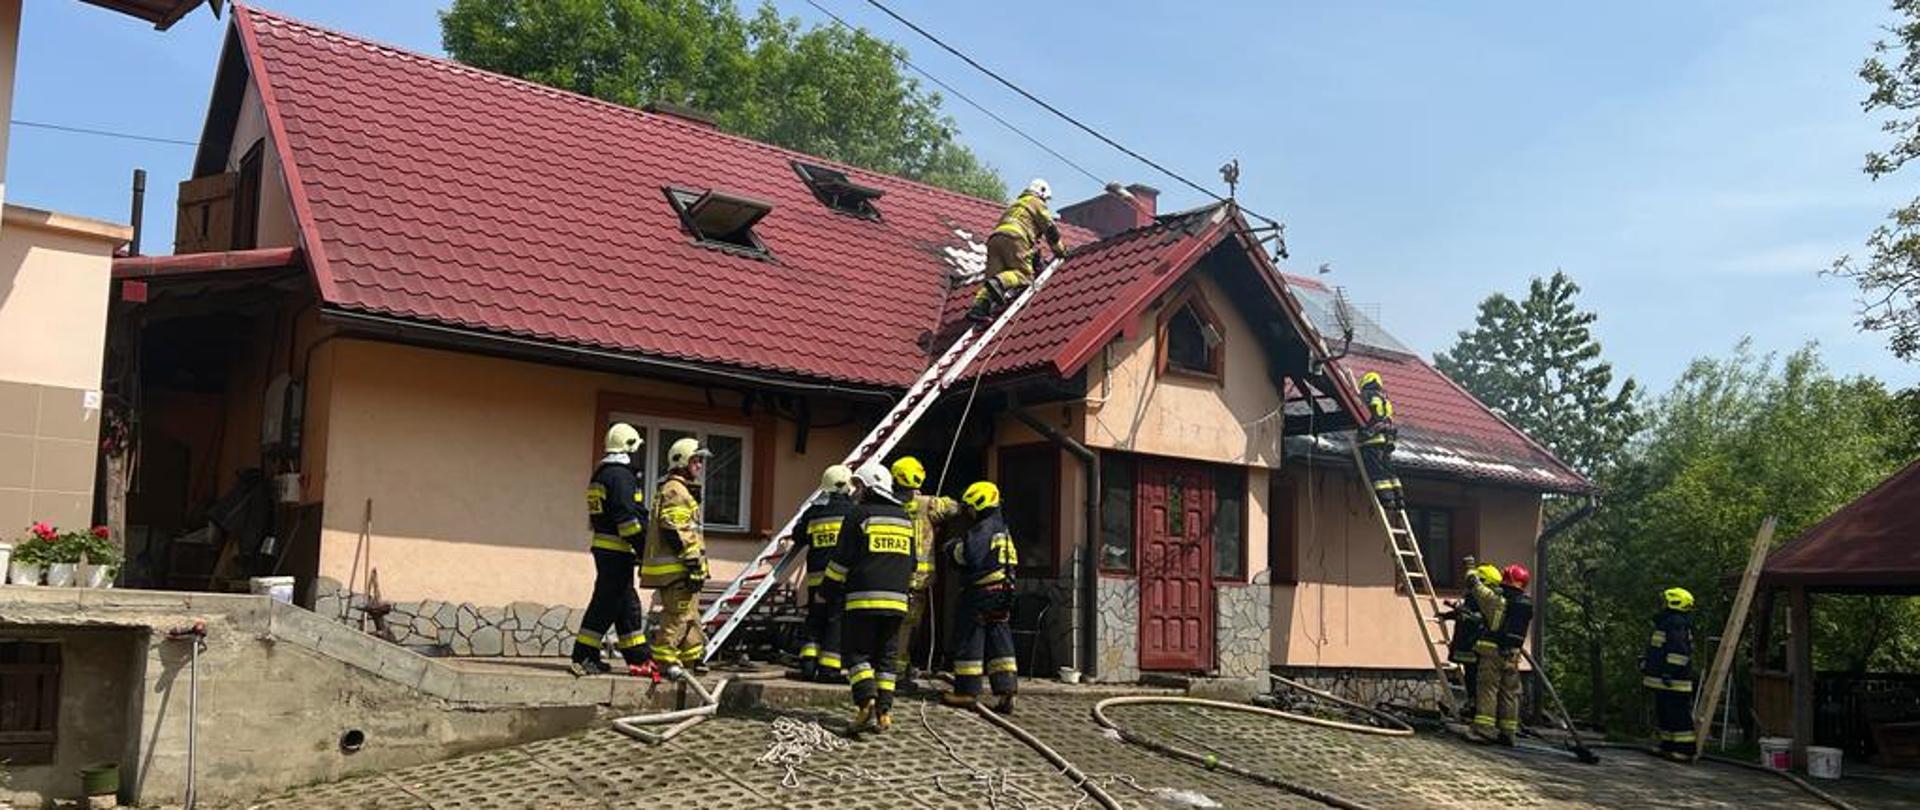 Strażacy gaszą pożar budynku mieszkalnego. Kilku z nich jest na dachu do którego przystawiona jest drabina